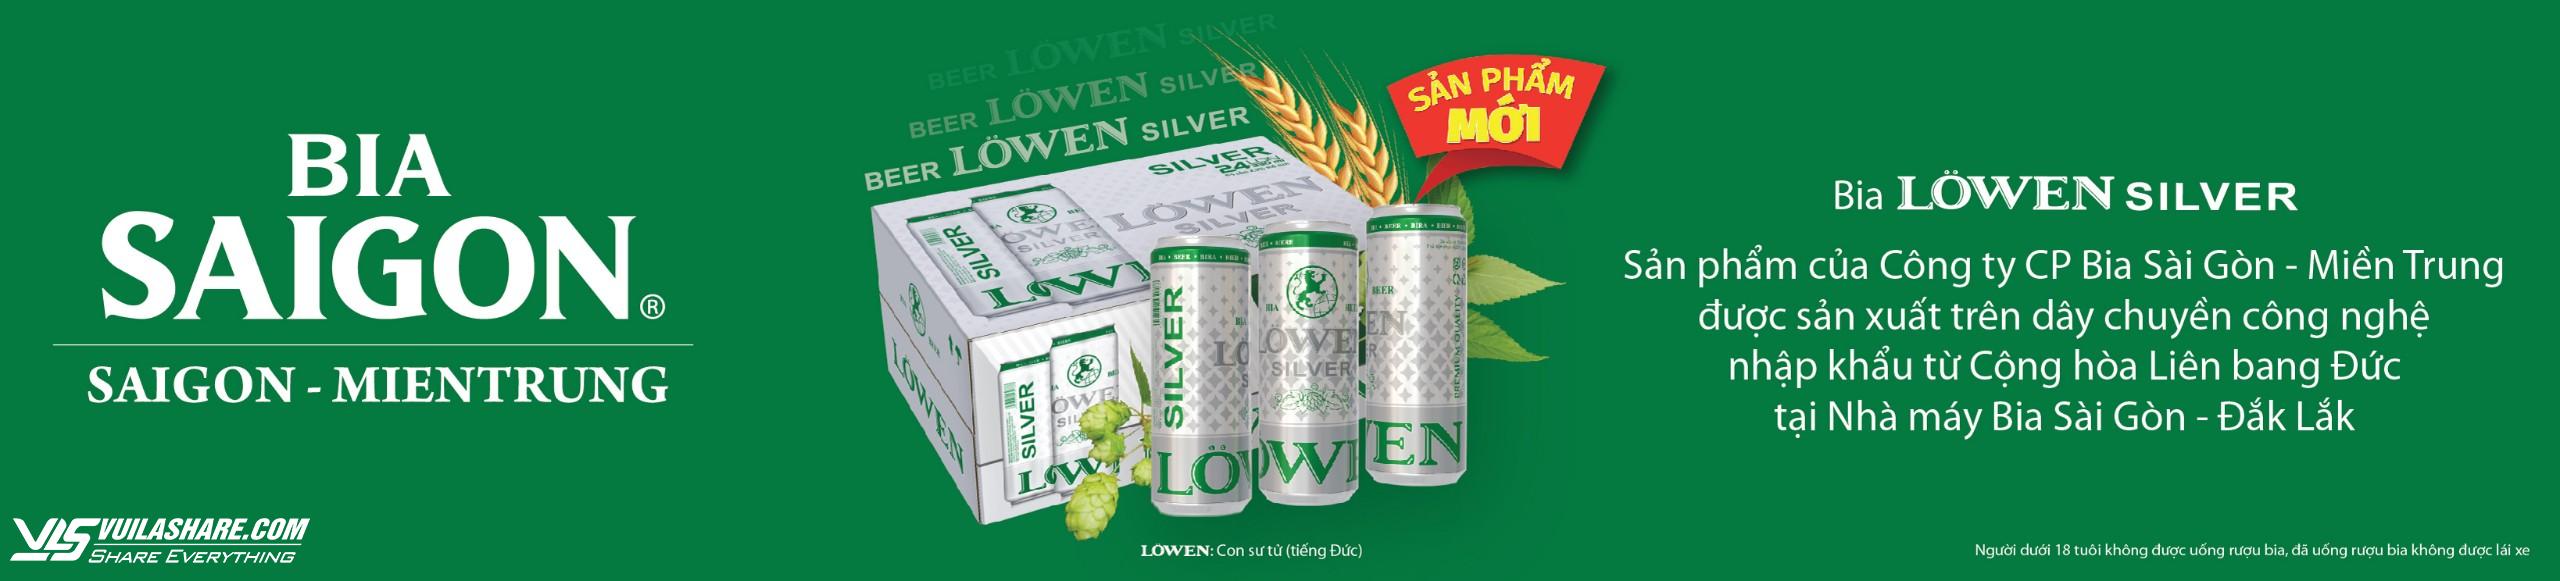 Bia LÖWEN SILVER - Sản phẩm đặc trưng của Đắk Lắk- Ảnh 3.